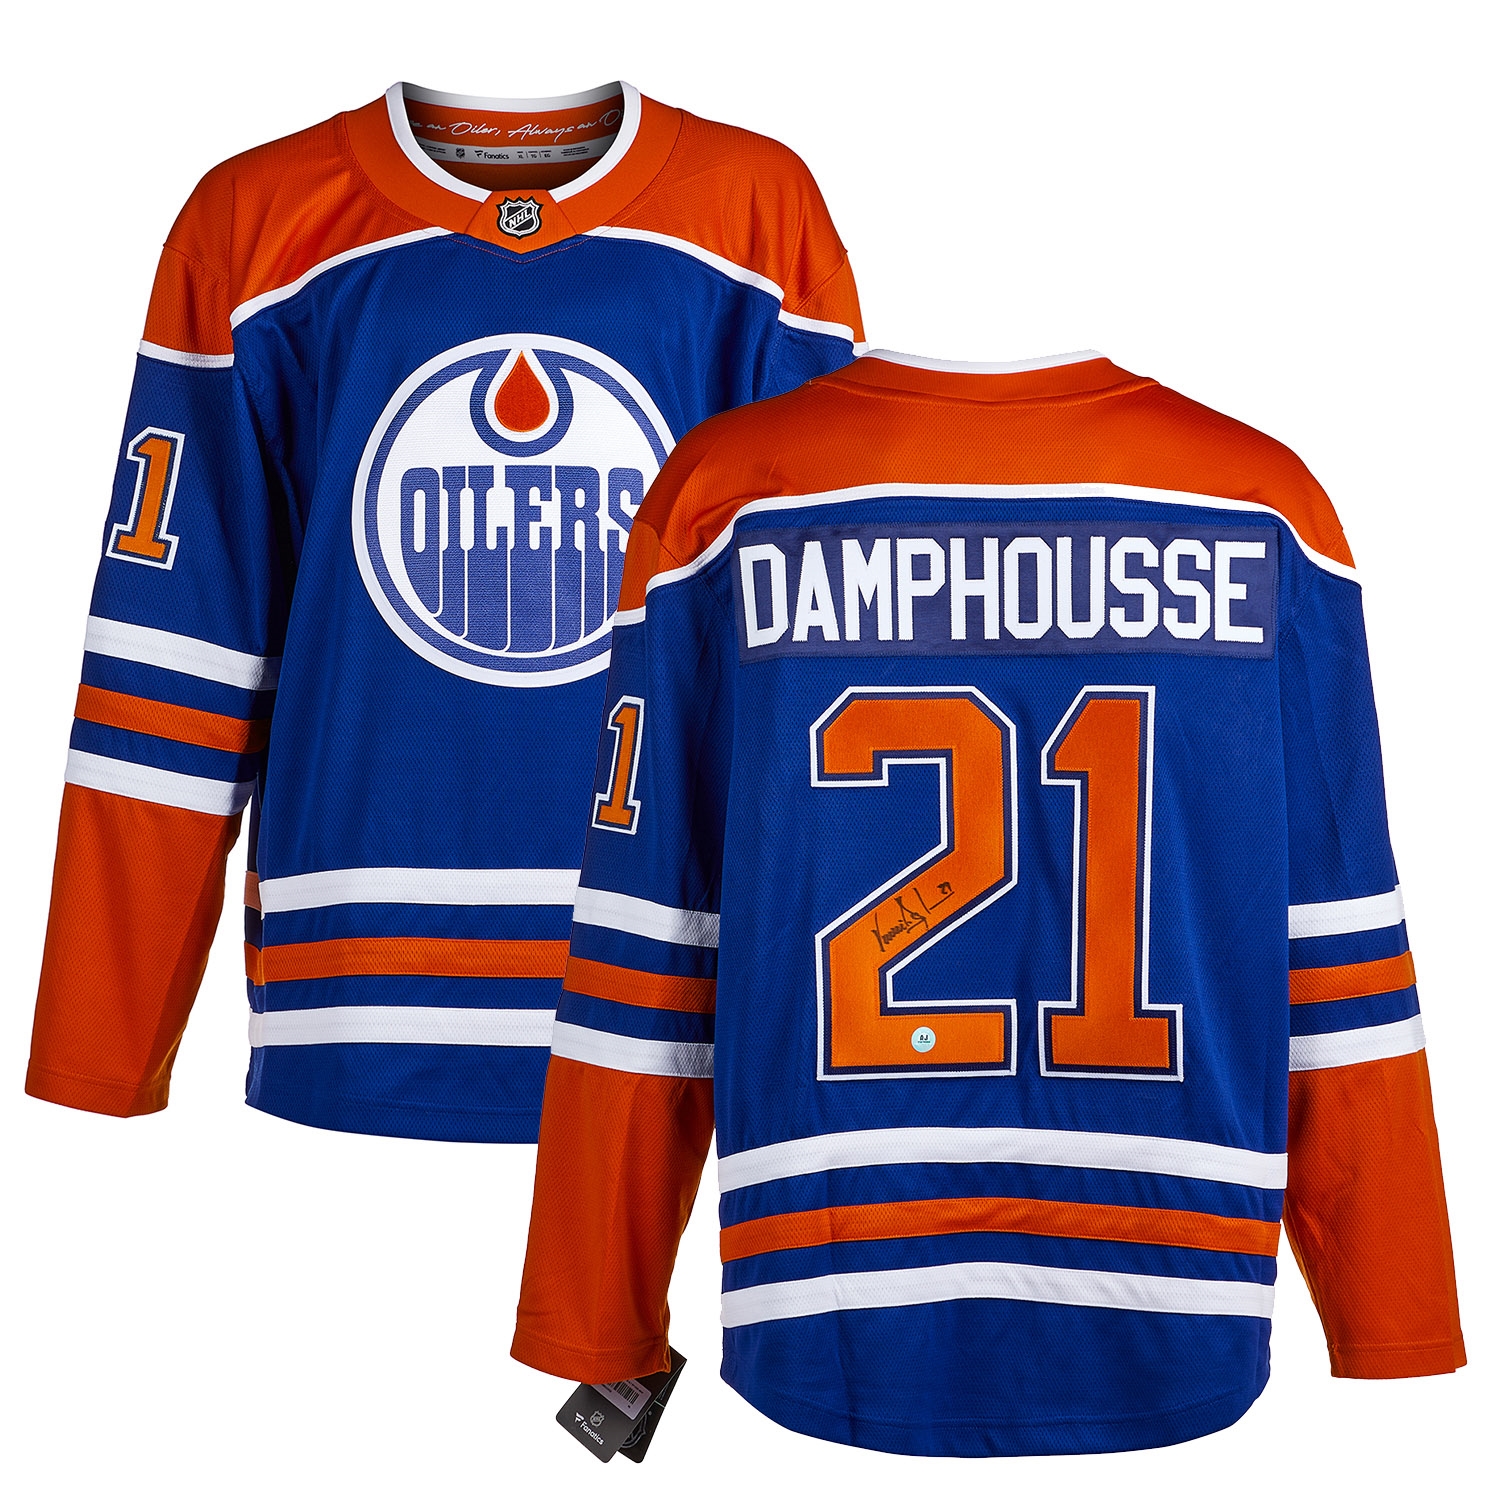 Vincent Damphousse Edmonton Oilers Autographed Fanatics Jersey